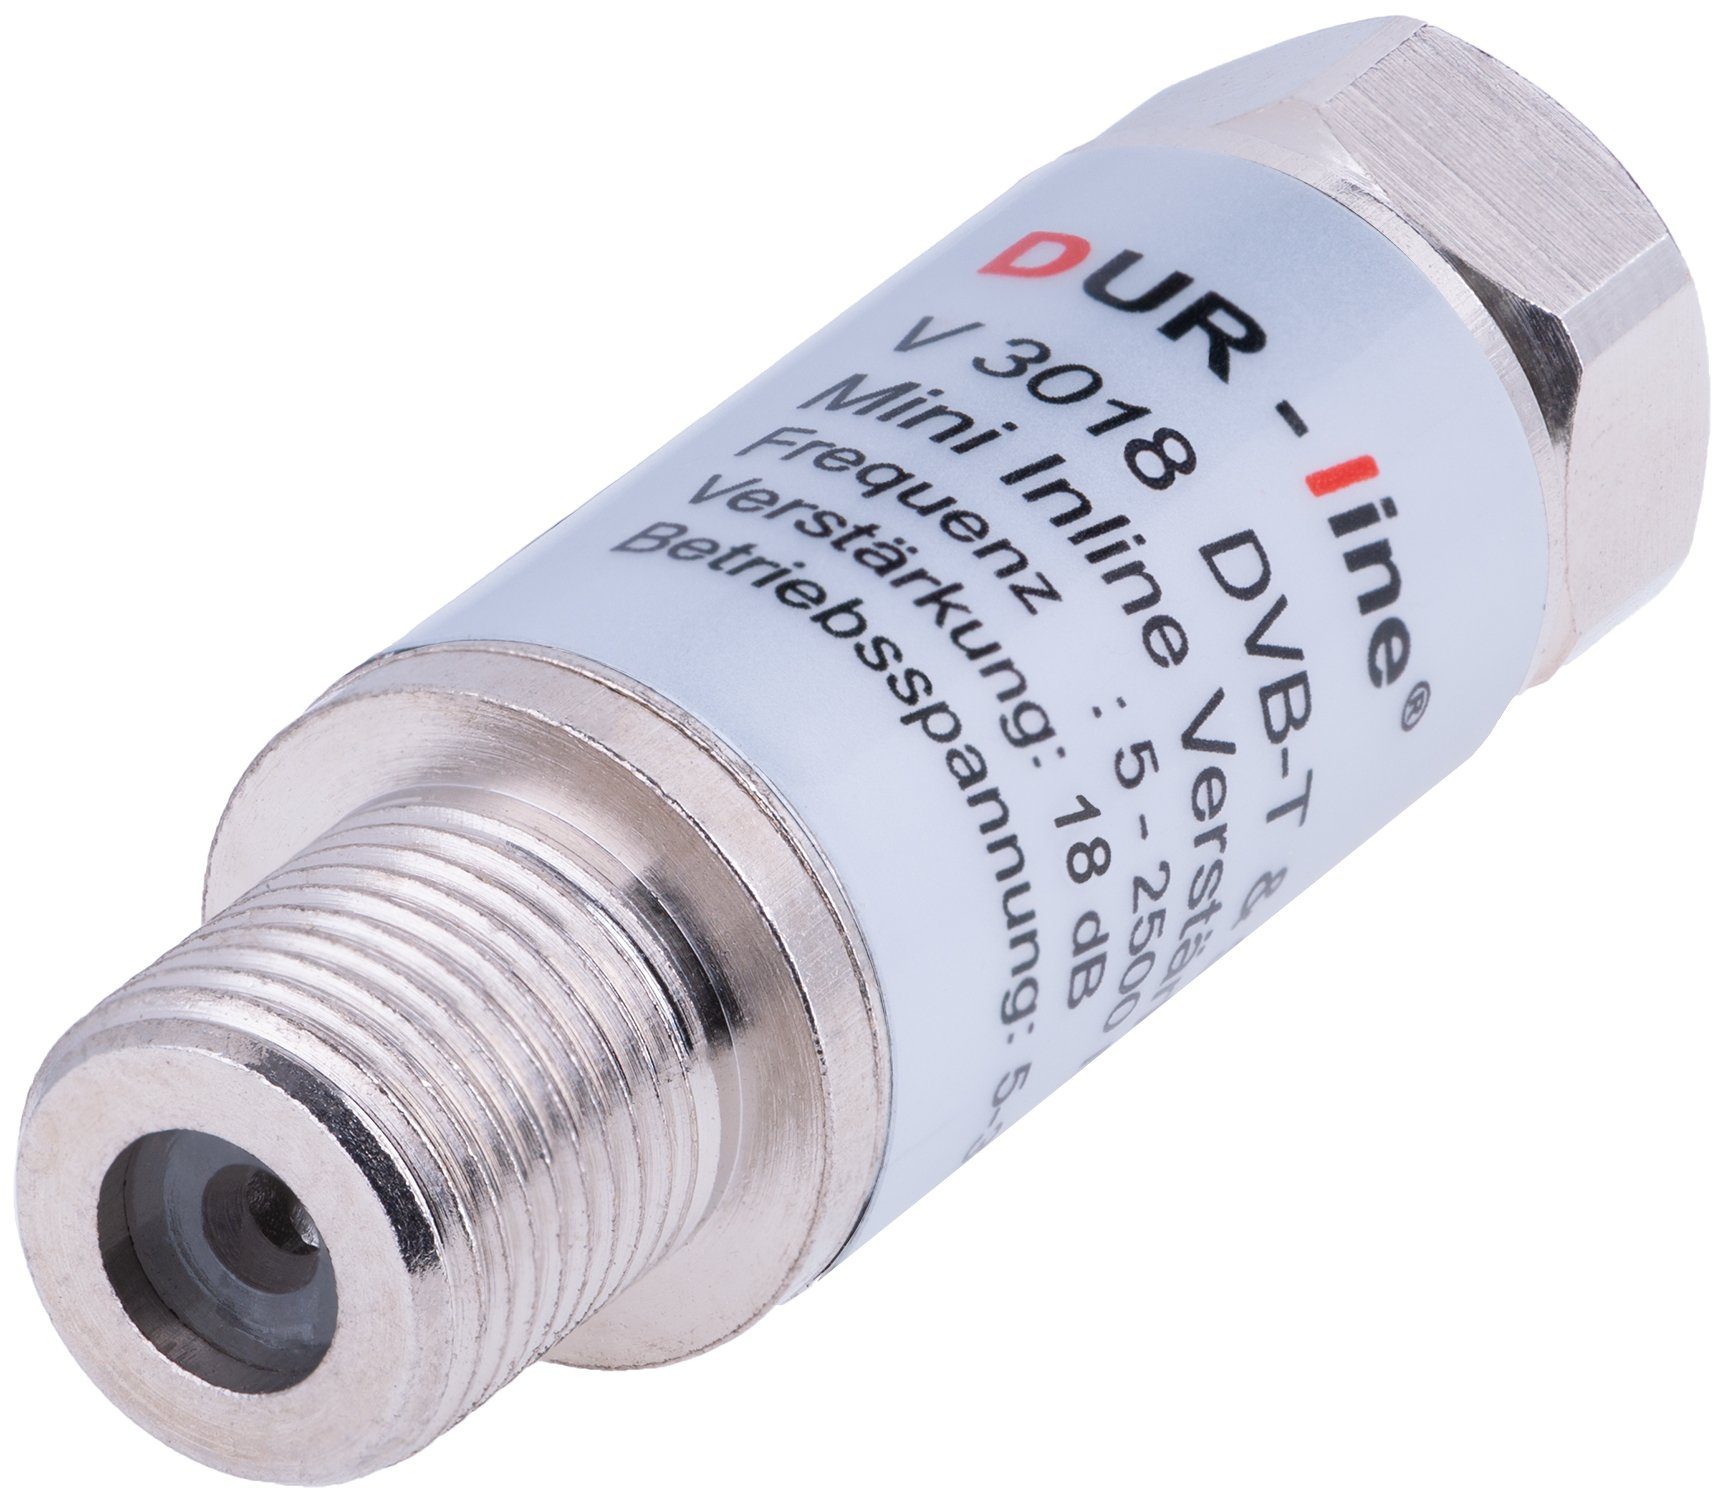 DUR-line Mini Inline-Verstärker Dur-Line V SAT-Kabel 18 3018 dB